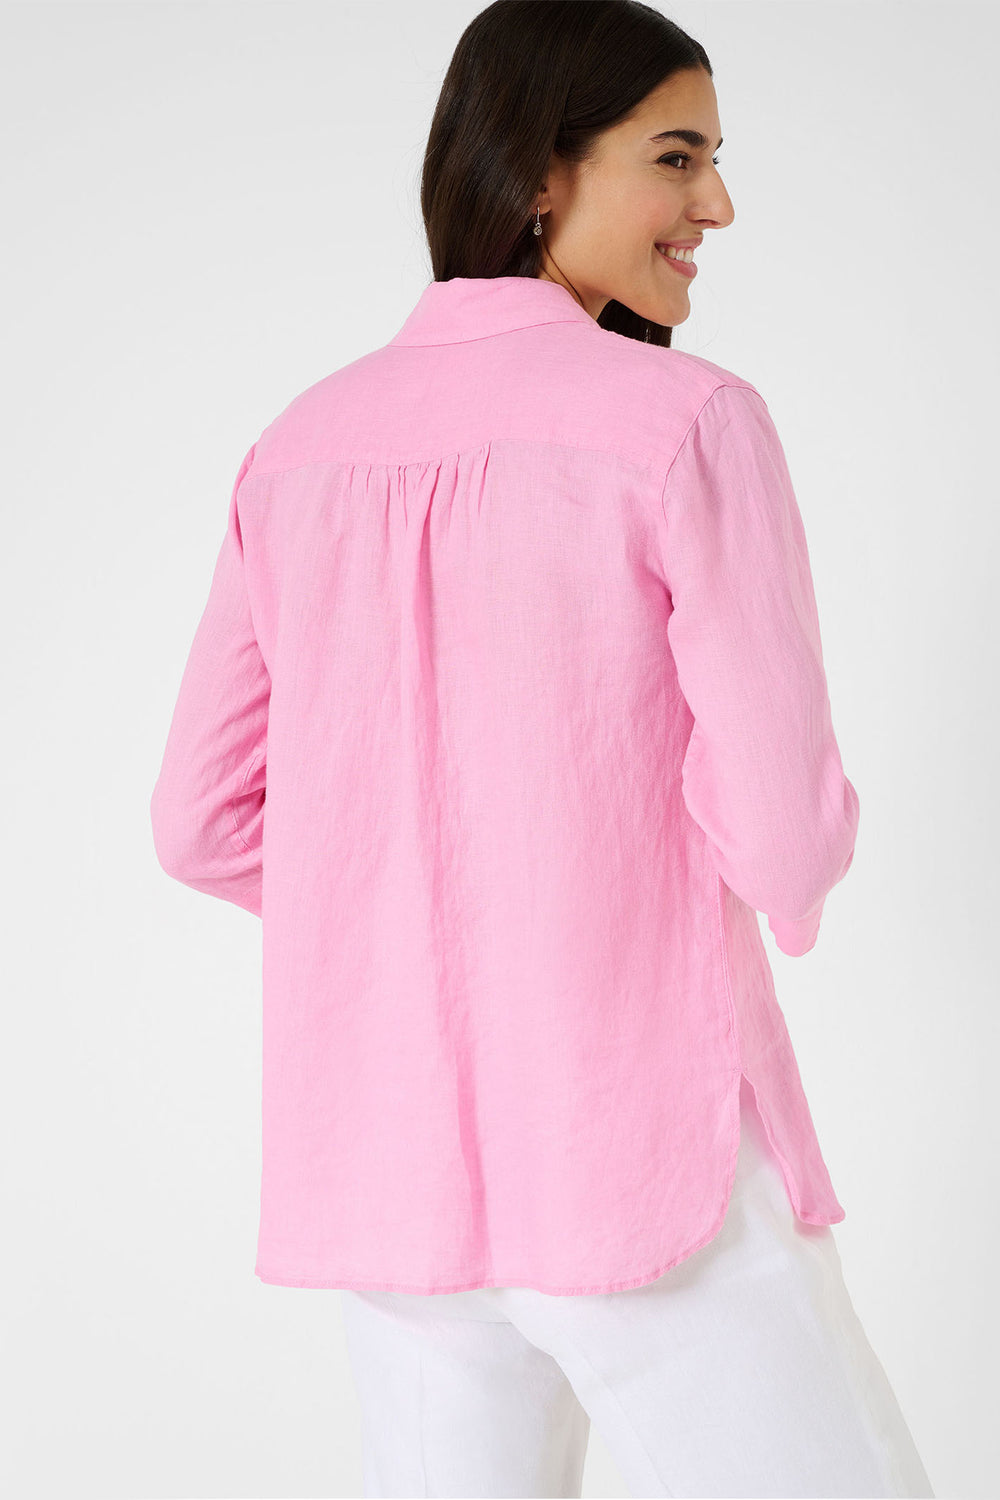 Brax Vicki 44-7038 94110200 48 Rosa Pink Long Sleeve Linen Shirt - Shirley Allum Boutique